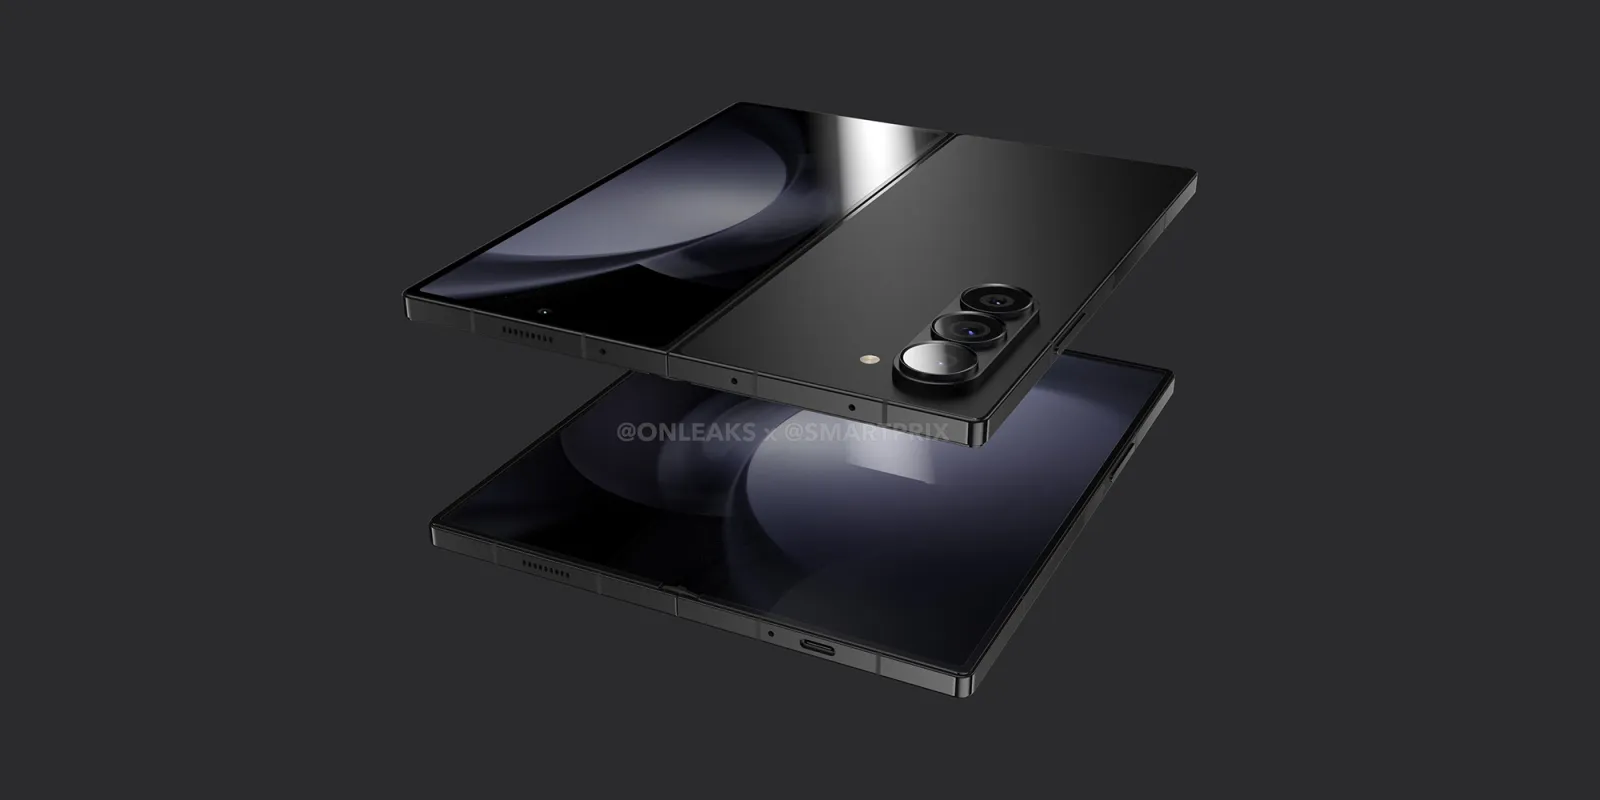 La maqueta del Samsung Galaxy Fold 6 muestra un diseño angular similar a los modelos Galaxy S Ultra y Galaxy Note